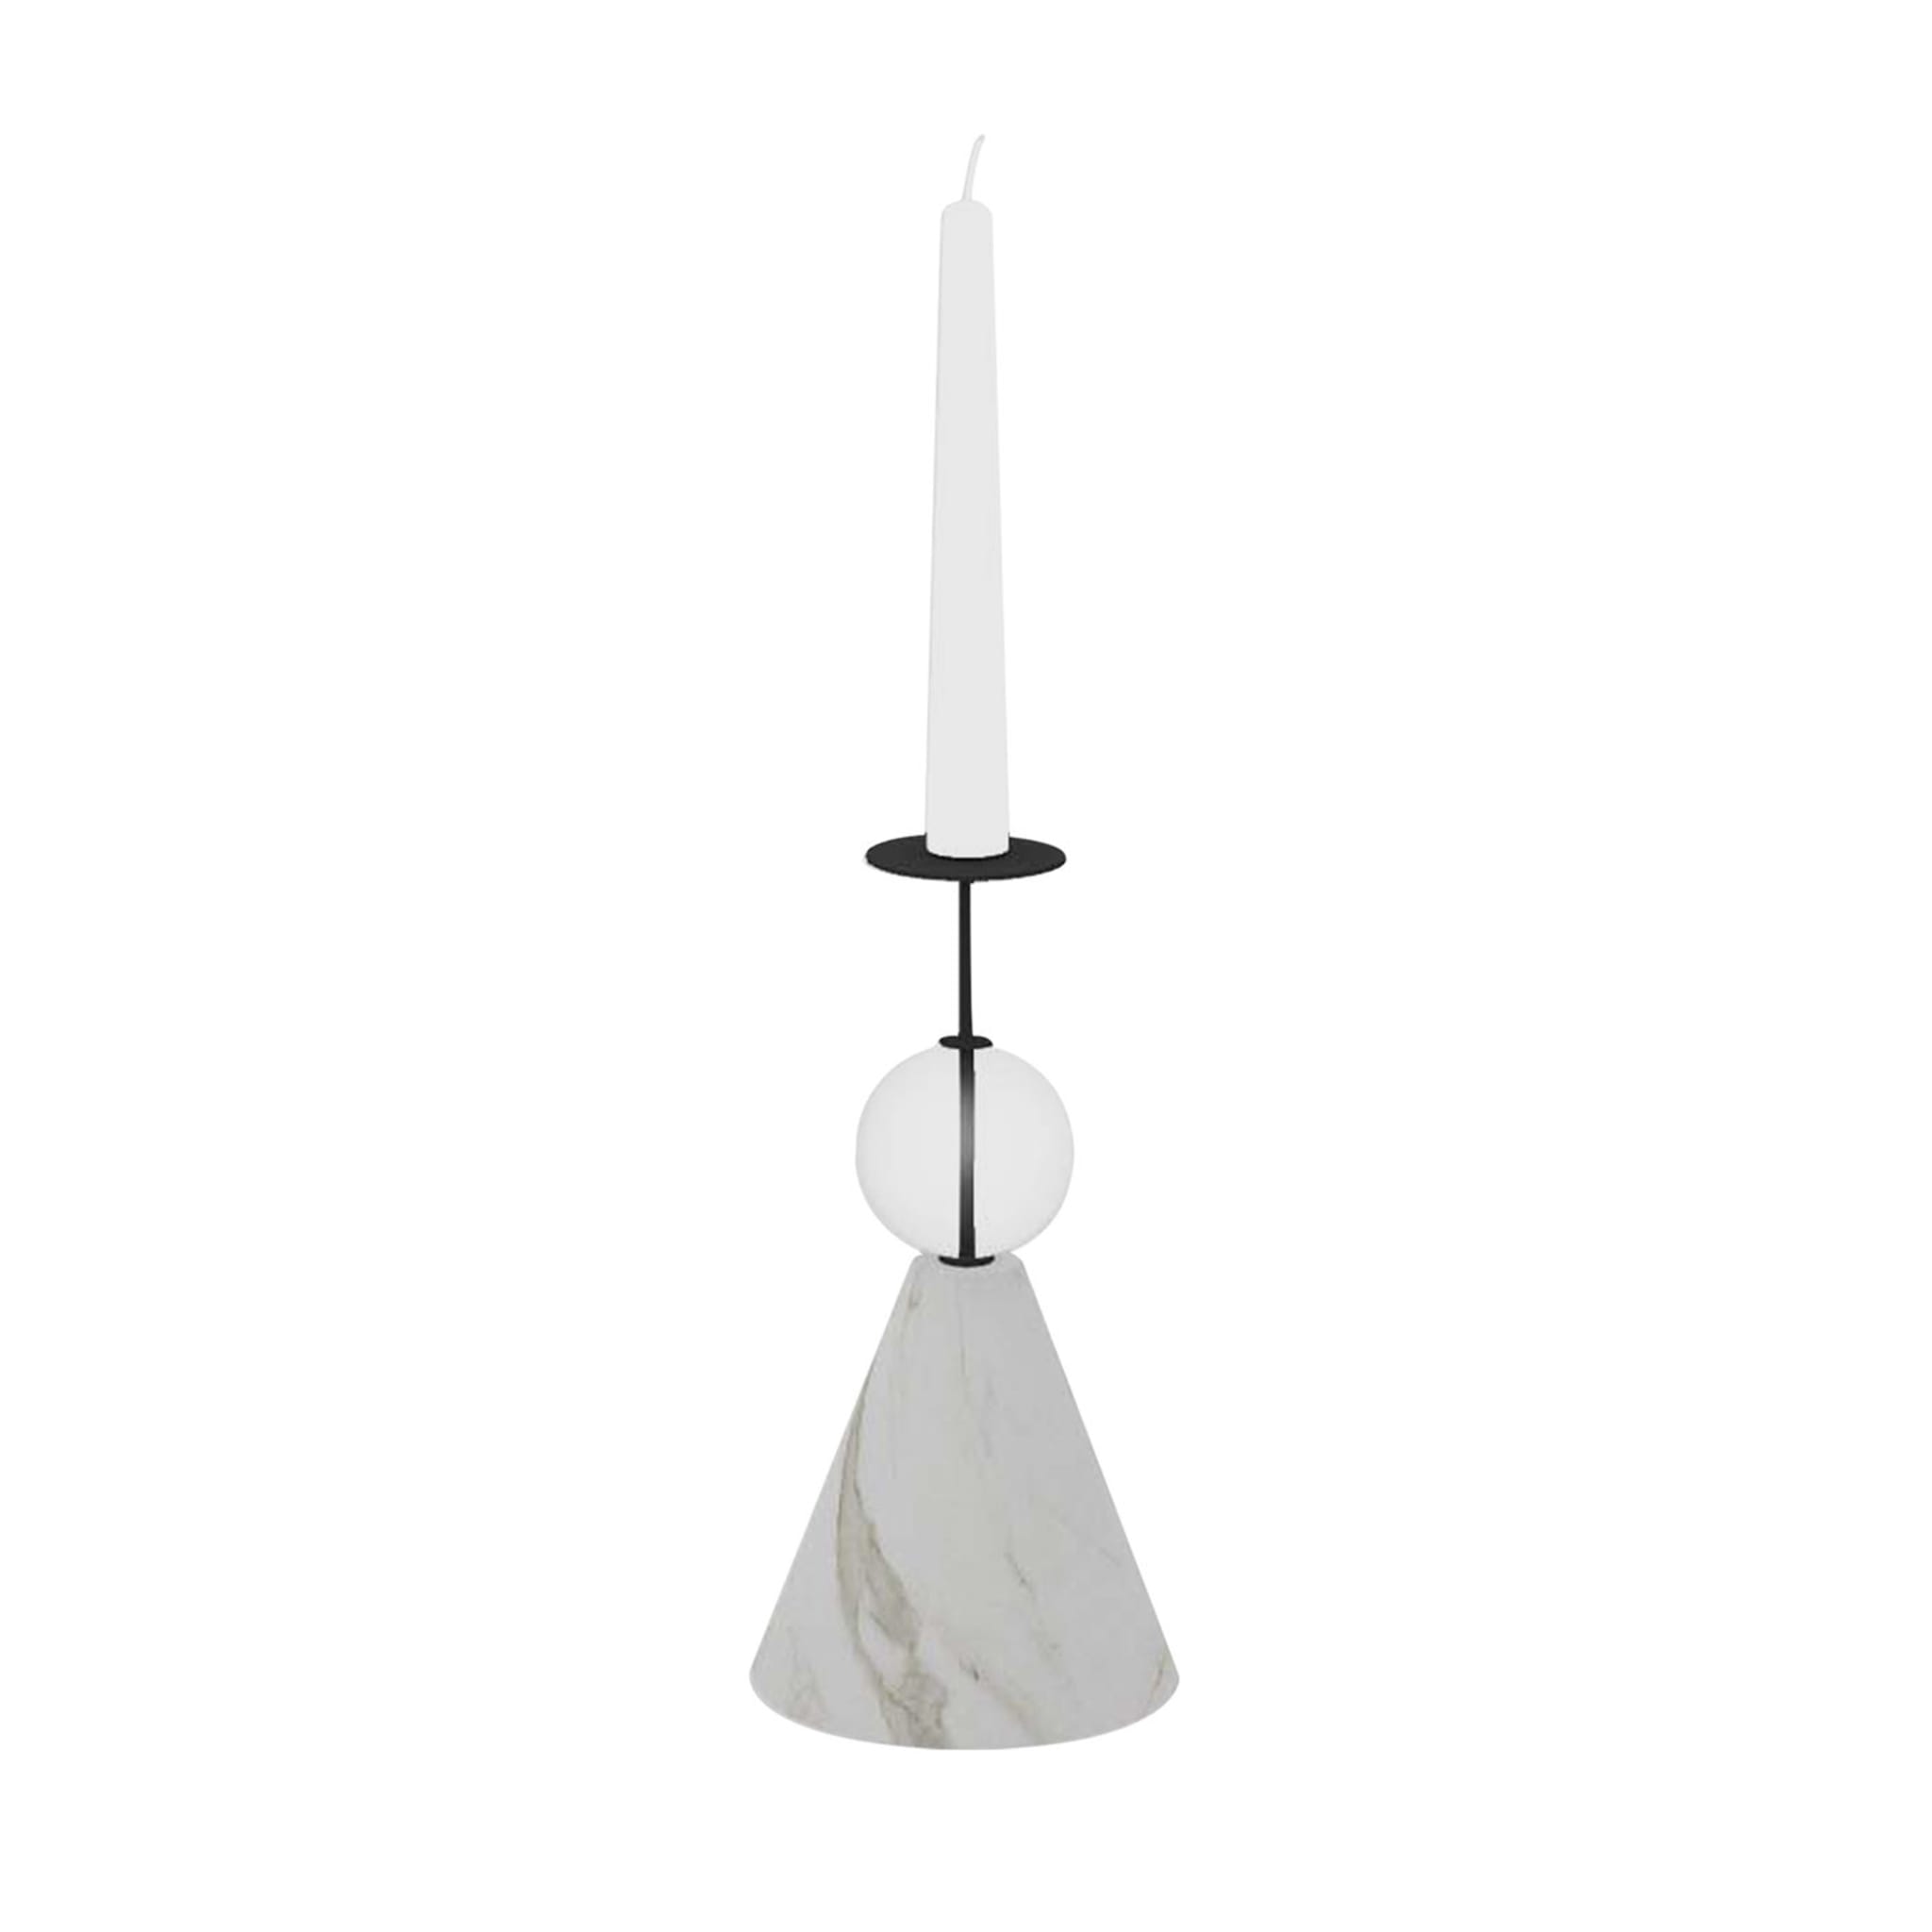 Raccontami Weiß Carrara, Schwarz und Transparent Kerzenständer - Hauptansicht